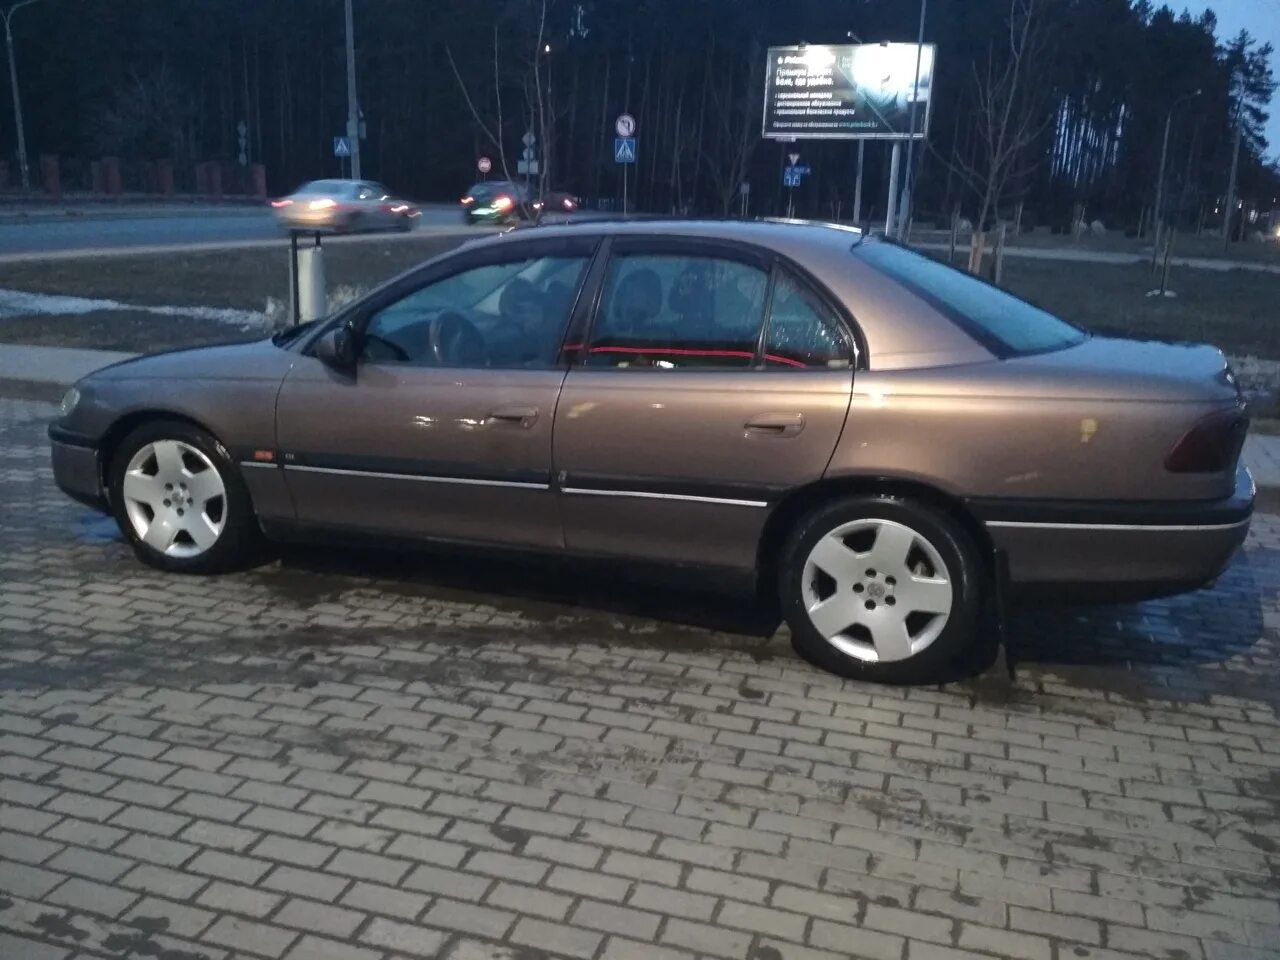 Opel Omega 1998. Опель Omega 1998. Опель Омега 1998 2.0. Опель Омега 1998 на Wolk. Омега б 1998